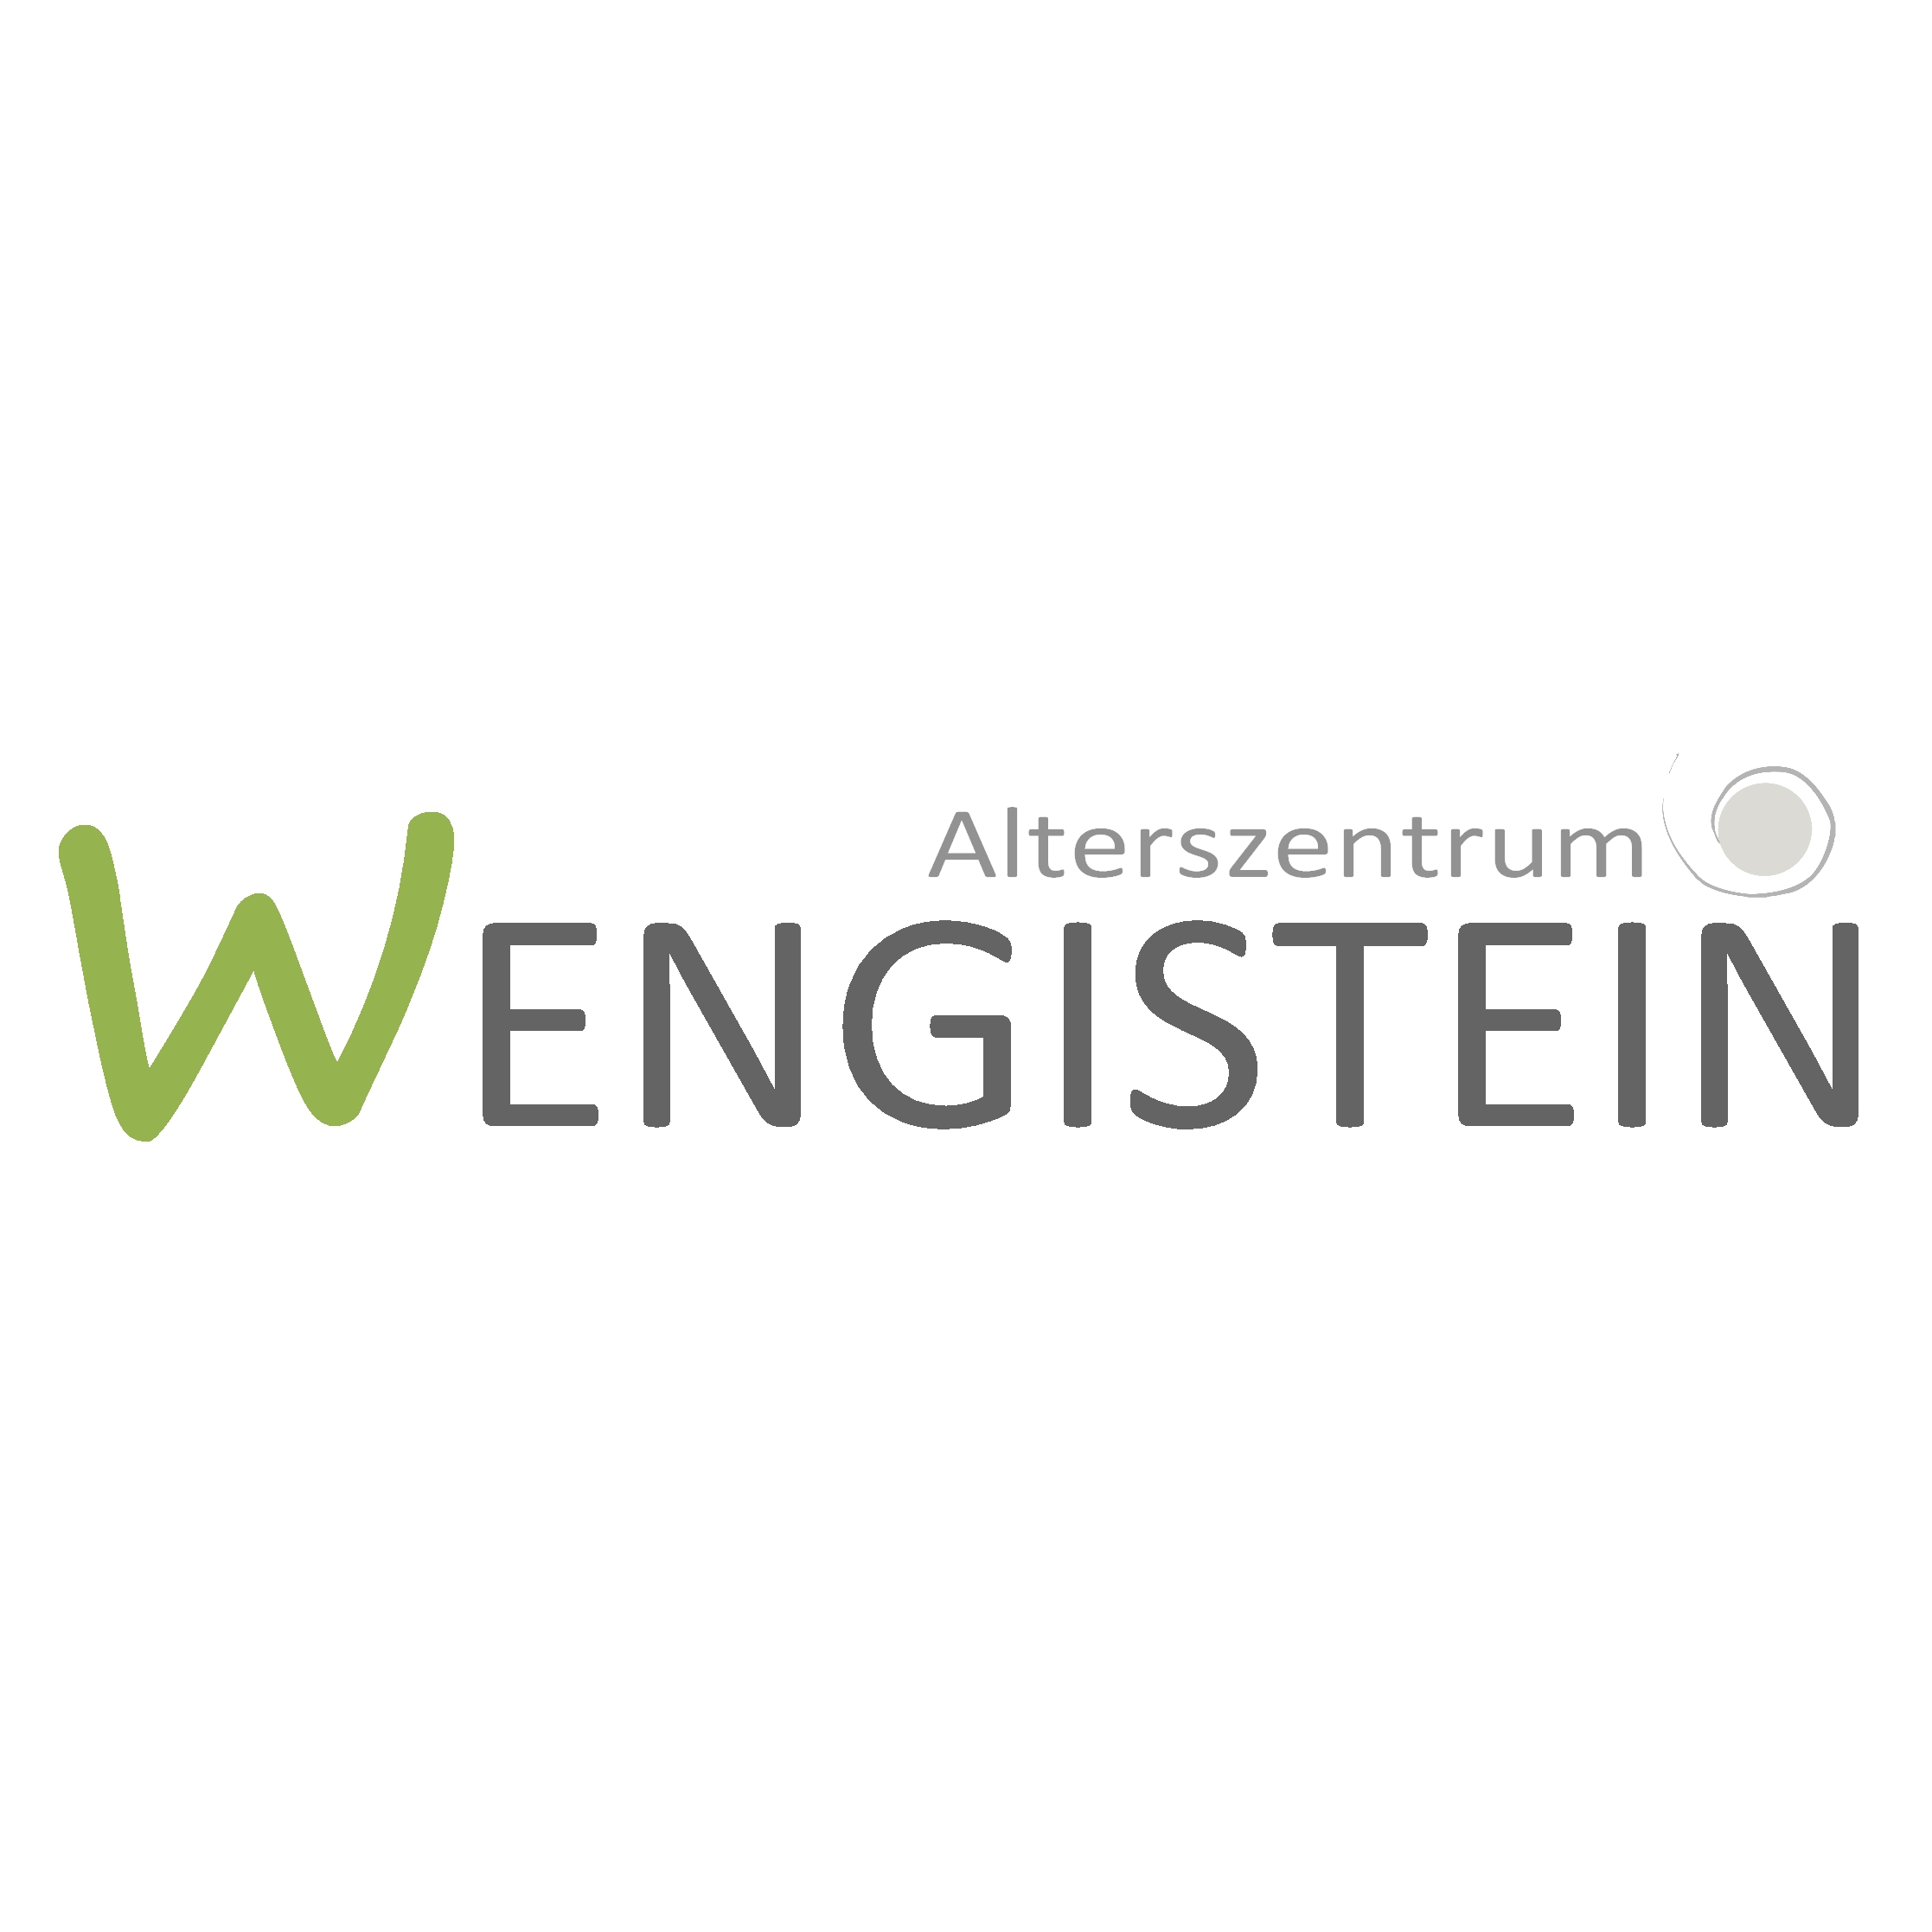 Alterszentrum Wengistein Logo